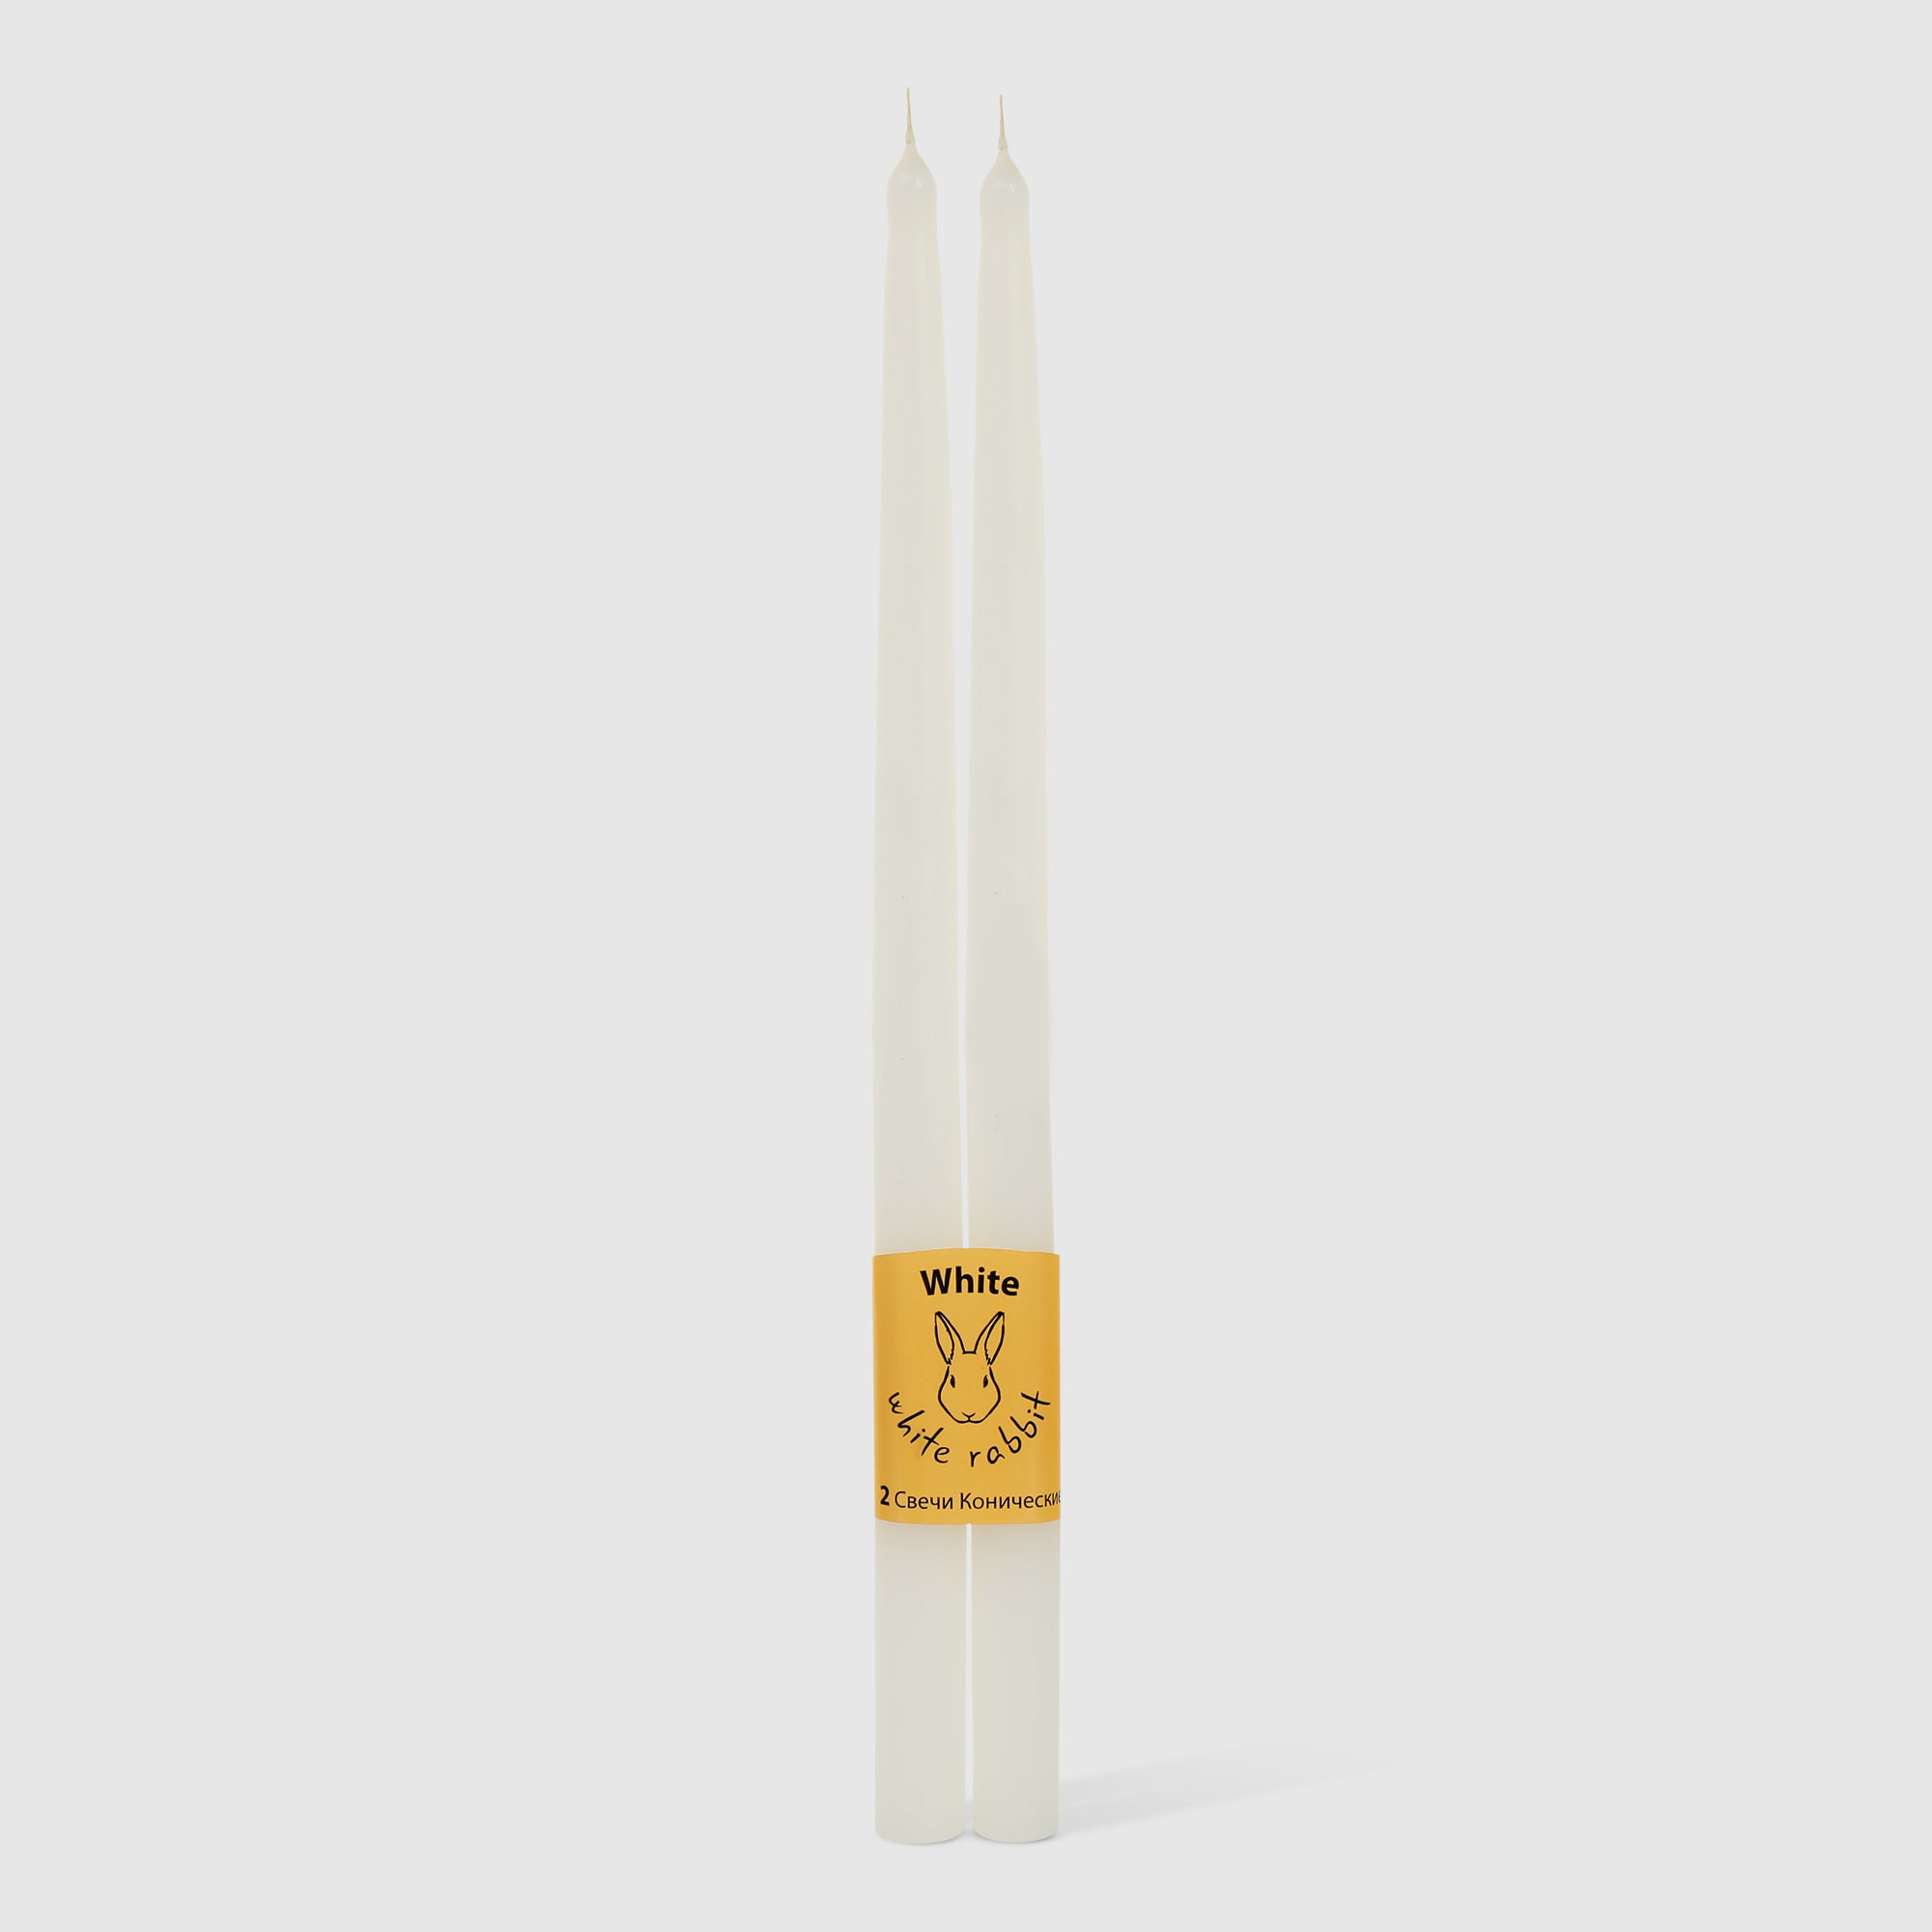 Набор конических свечей White Rabbit белые 30 см 2 шт набор свечей из вощины медовых с добавлением эфирного масла